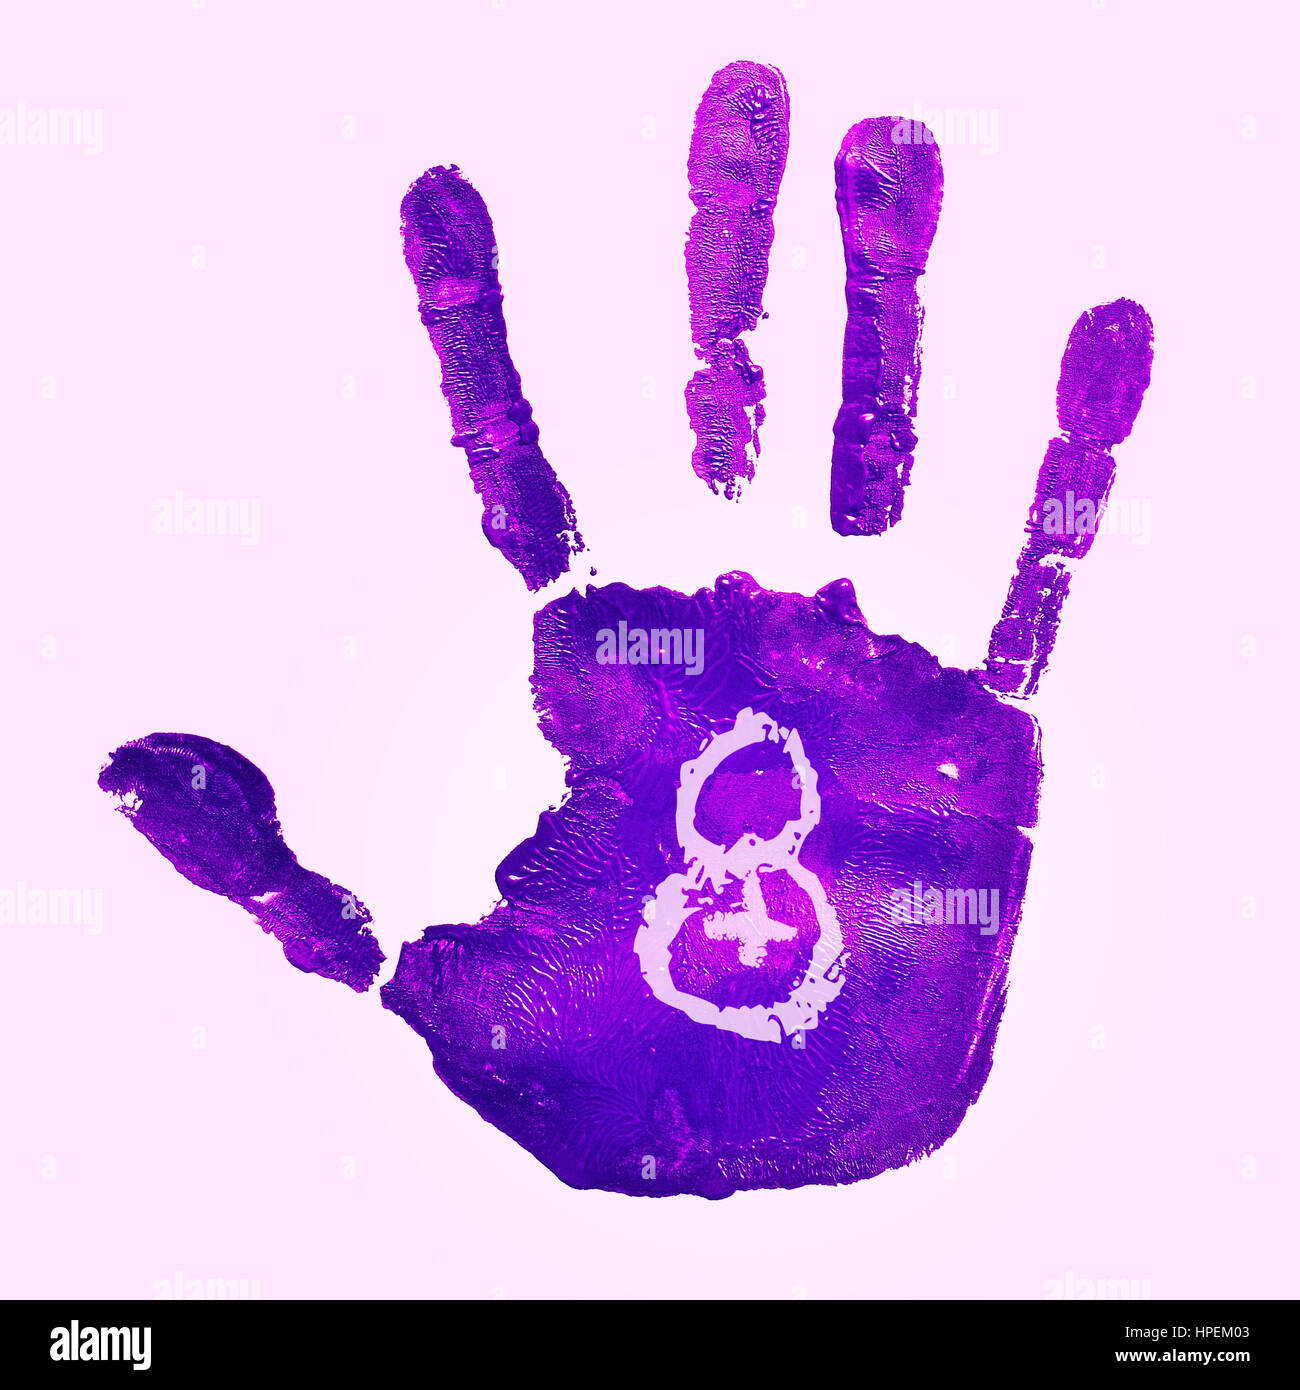 eine violette Handabdruck und die Zahl 8 für den Damen-Tag im März 8, auf einem rosa Hintergrund beobachtet Stockfoto